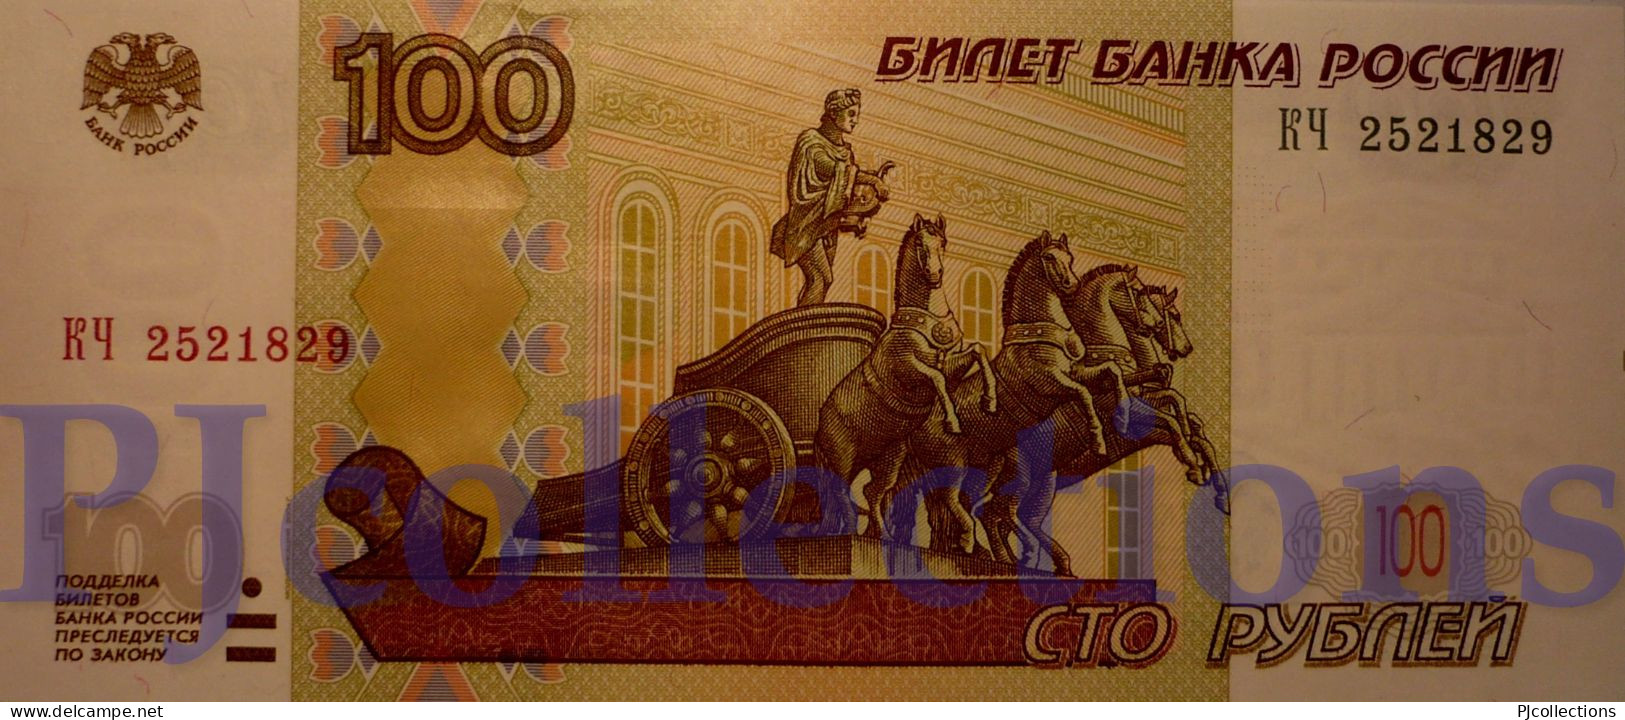 RUSSIA 100 RUBLES 1997 PICK 270a UNC - Rusia